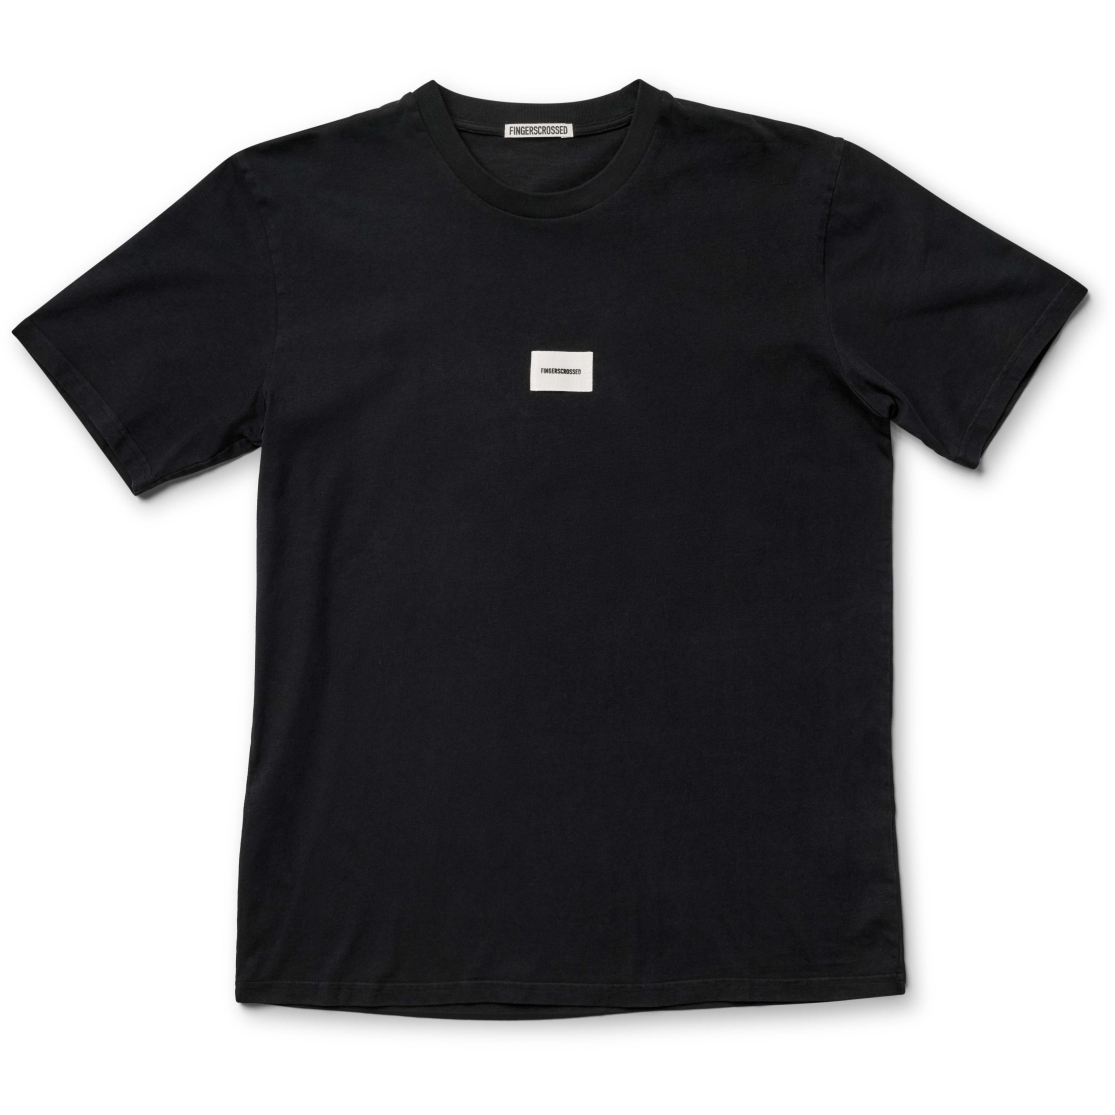 Produktbild von FINGERSCROSSED Movement T-Shirt - Type - Schwarz